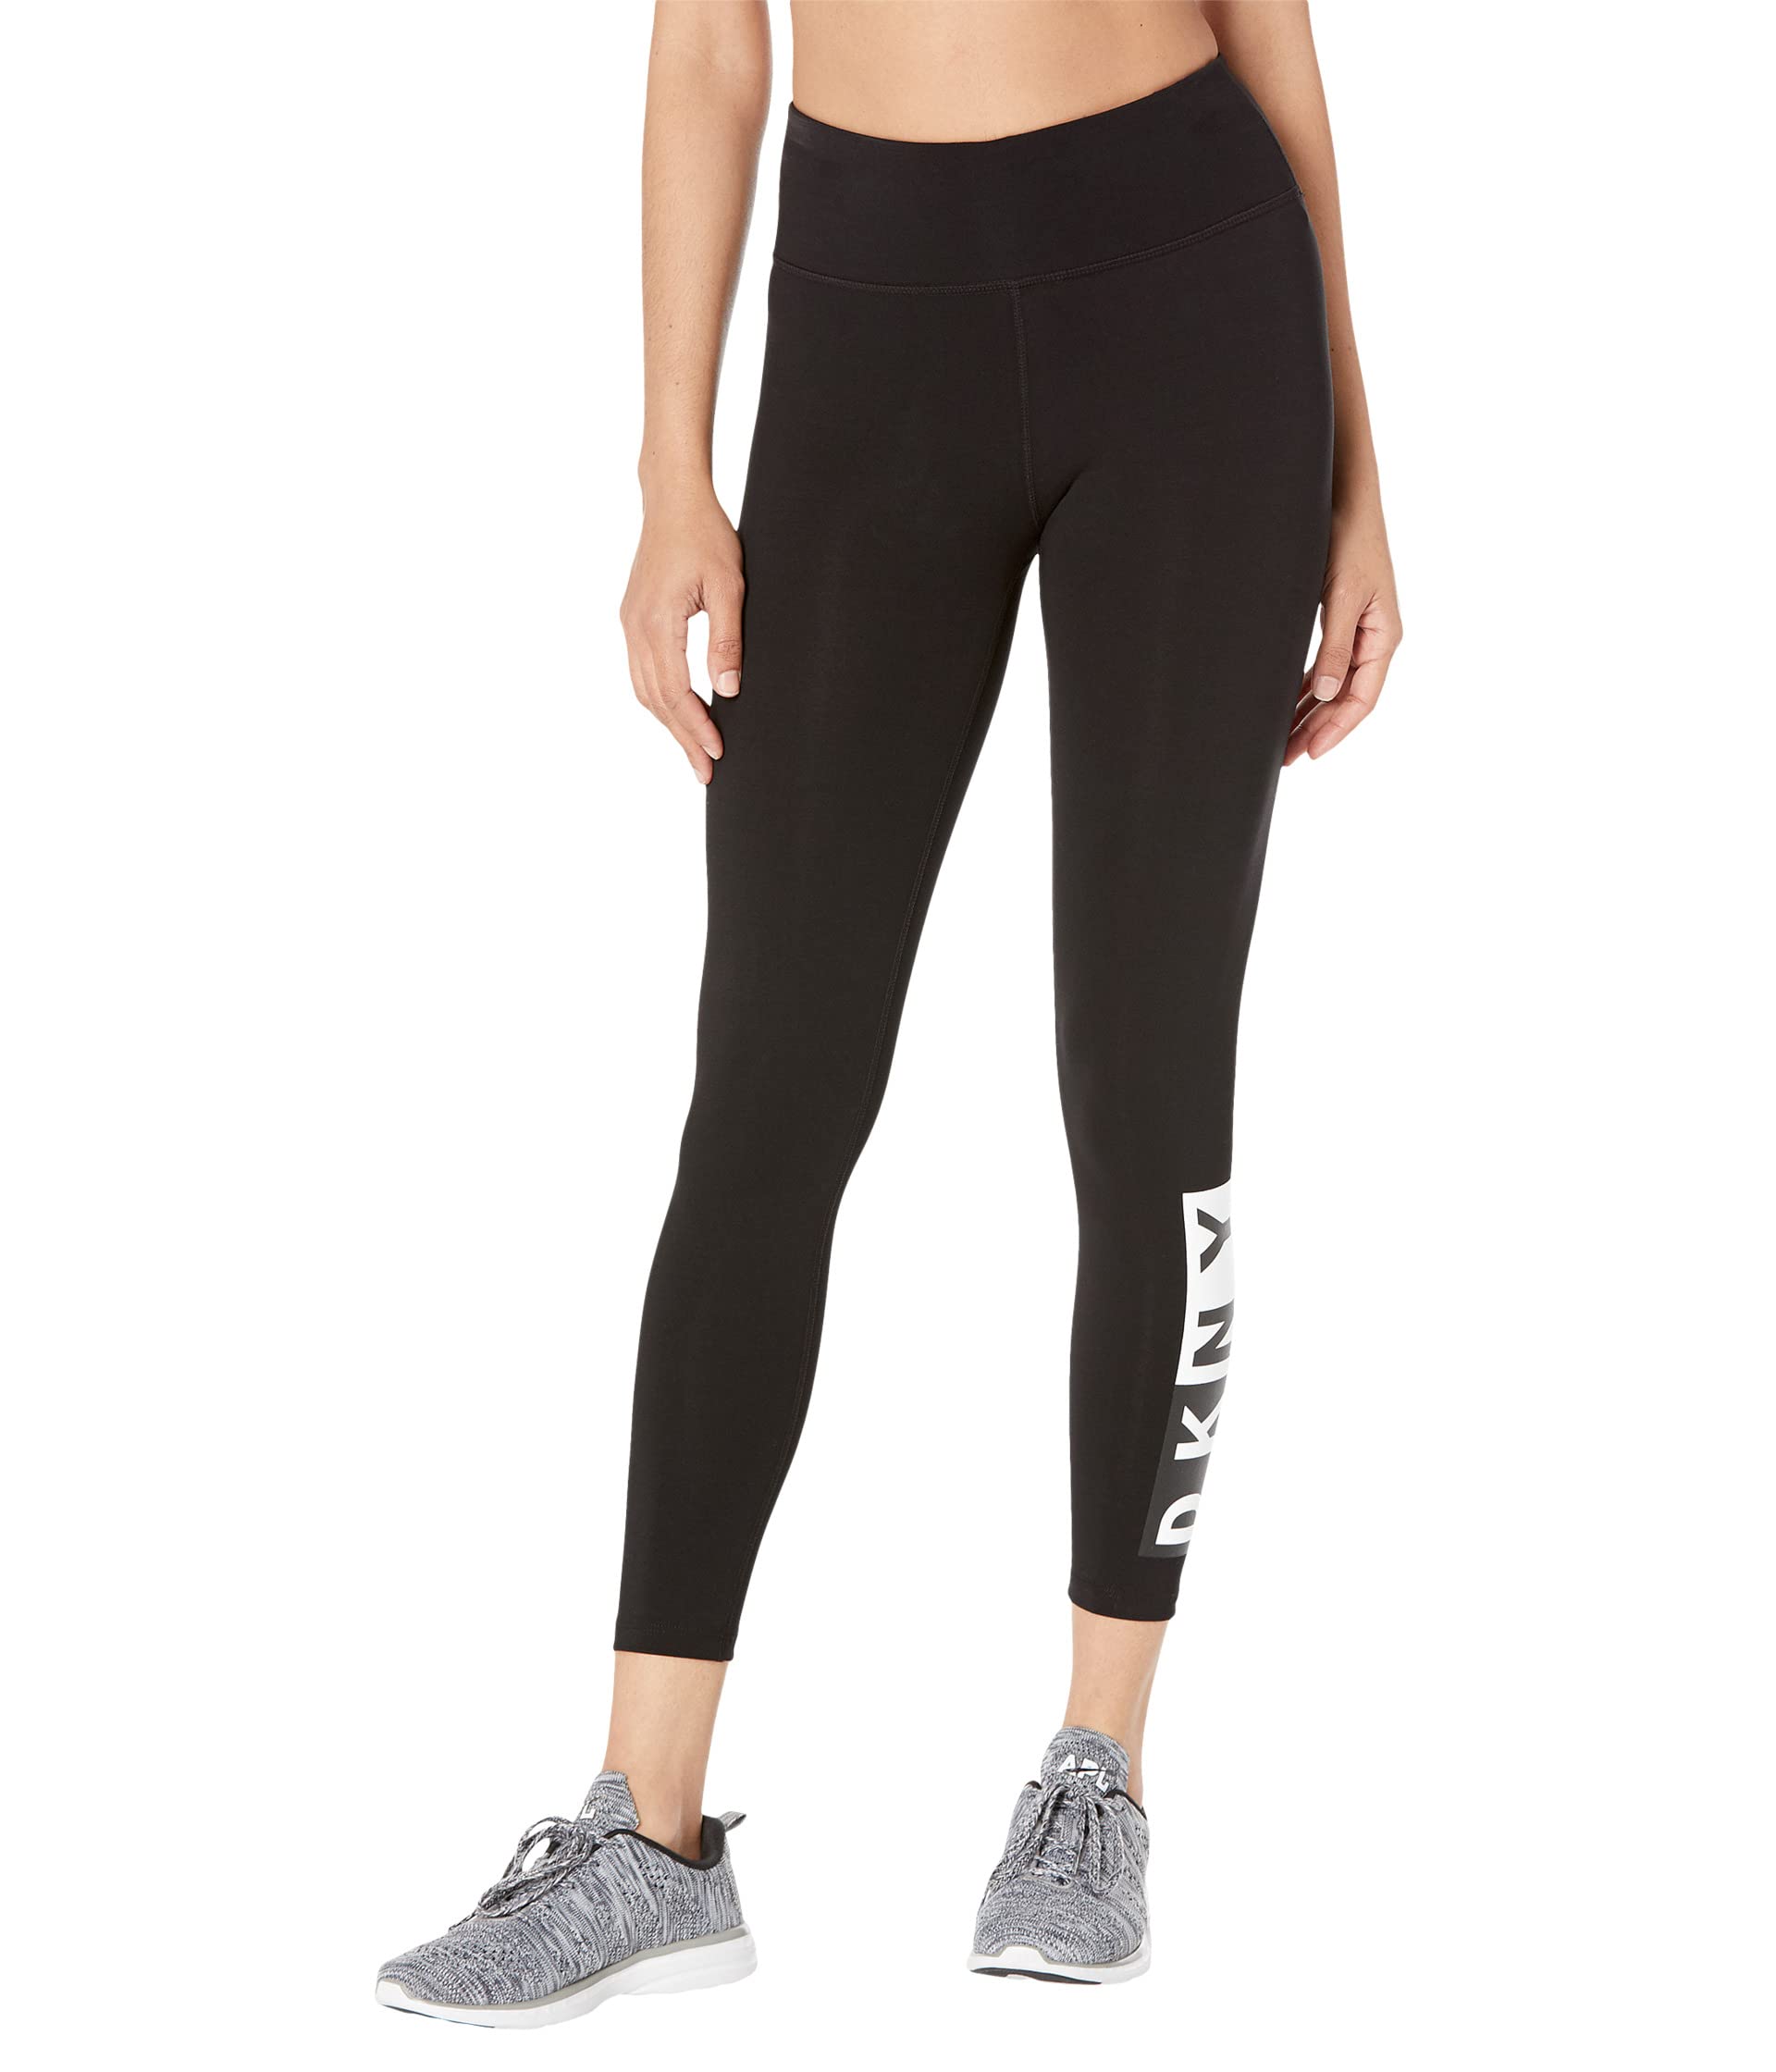 Леггинсы DKNY, Women's Tummy Control Workout Yoga Leggings цена и фото